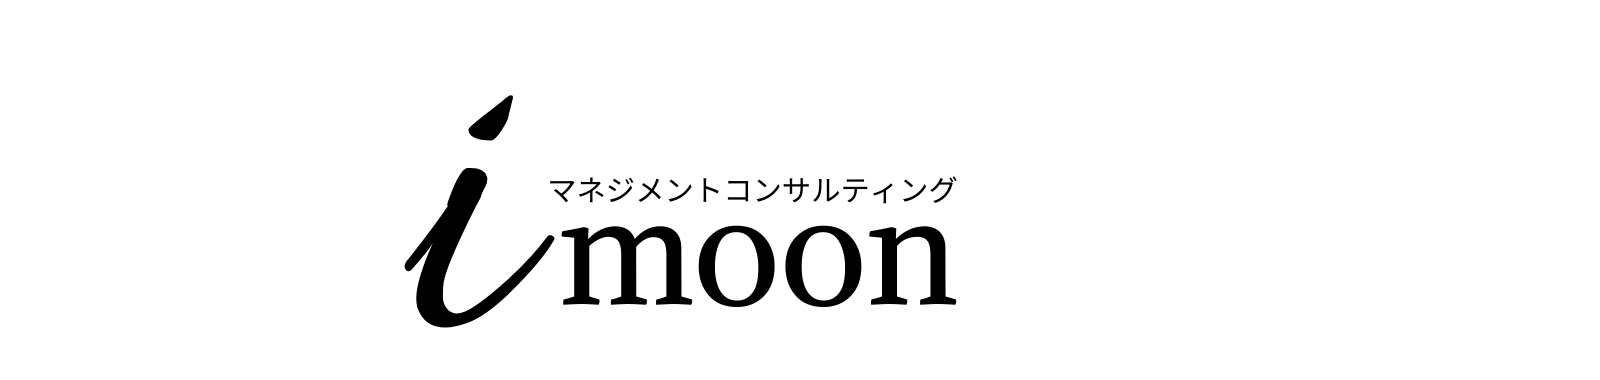 i-moonマネジメントコンサルティング (1)